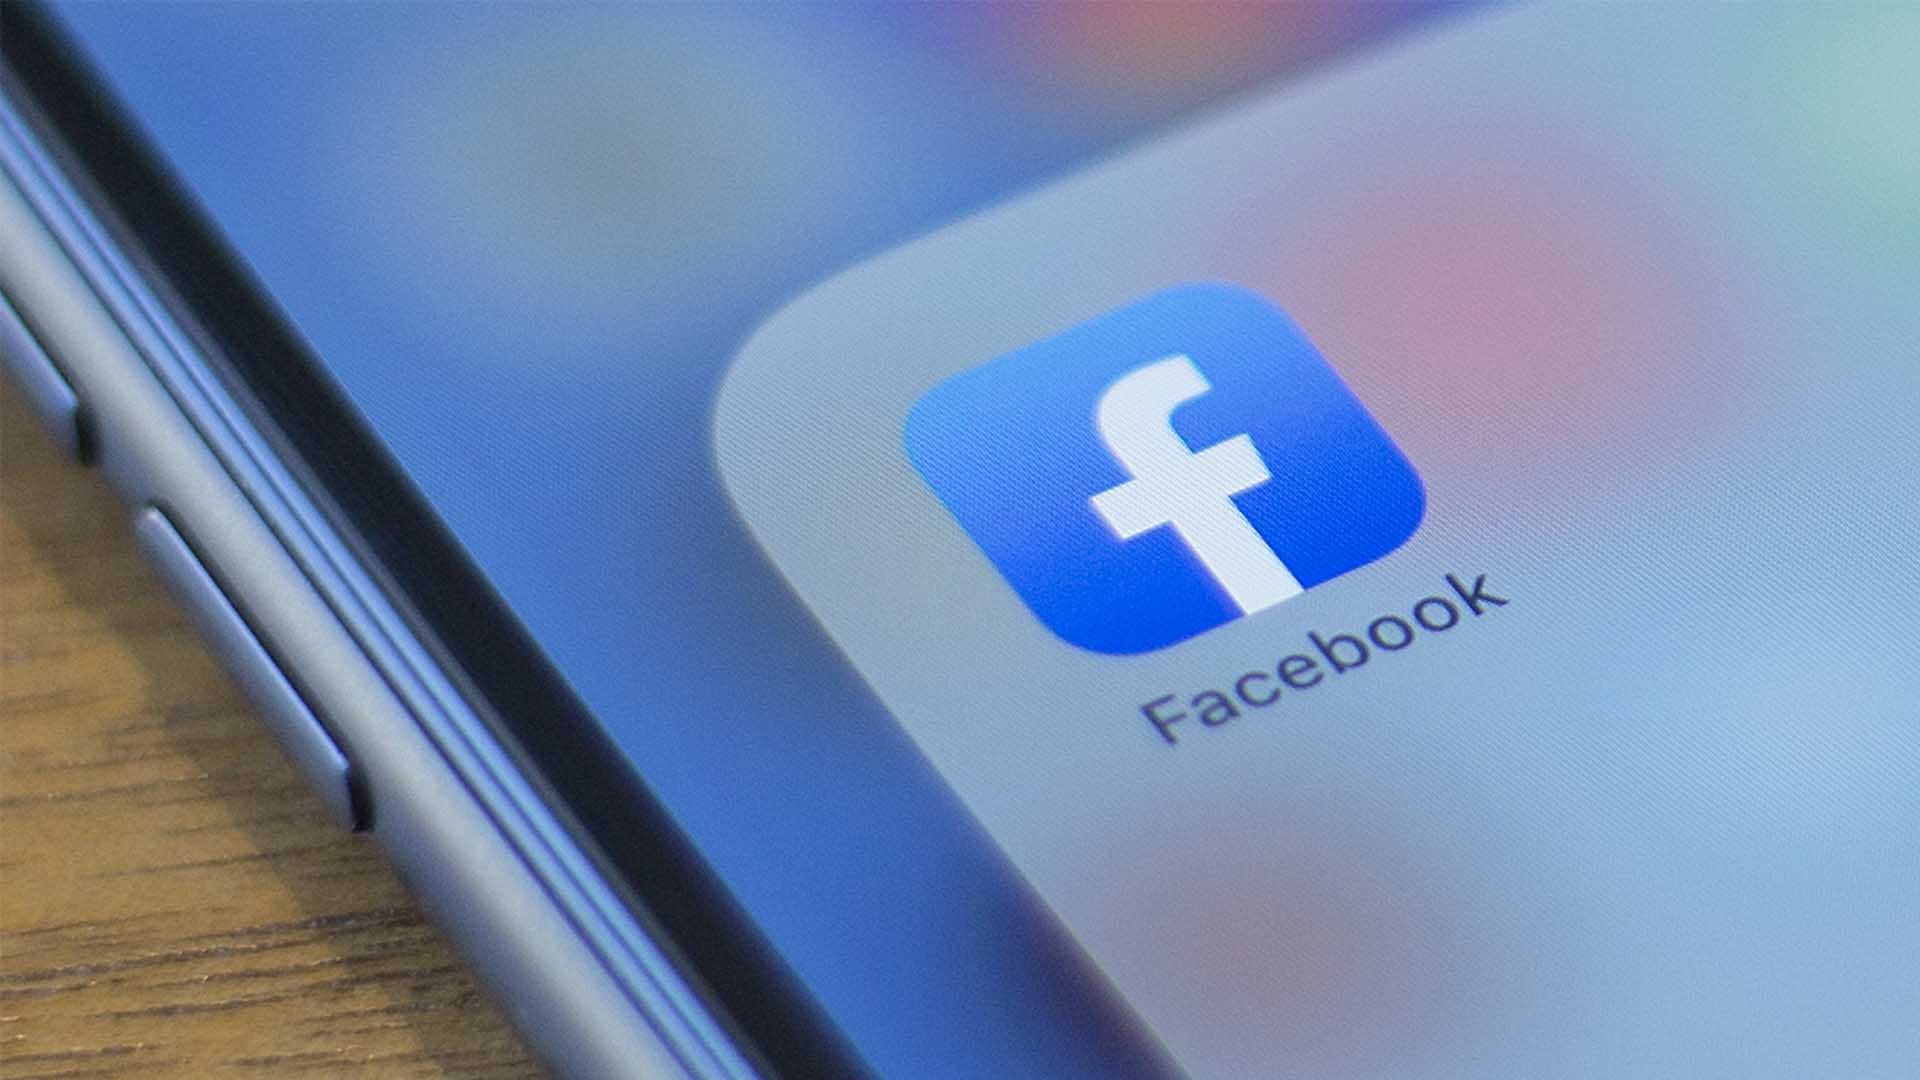 Facebook reconoce un fallo que permitió a niños chatear en grupos con extraños